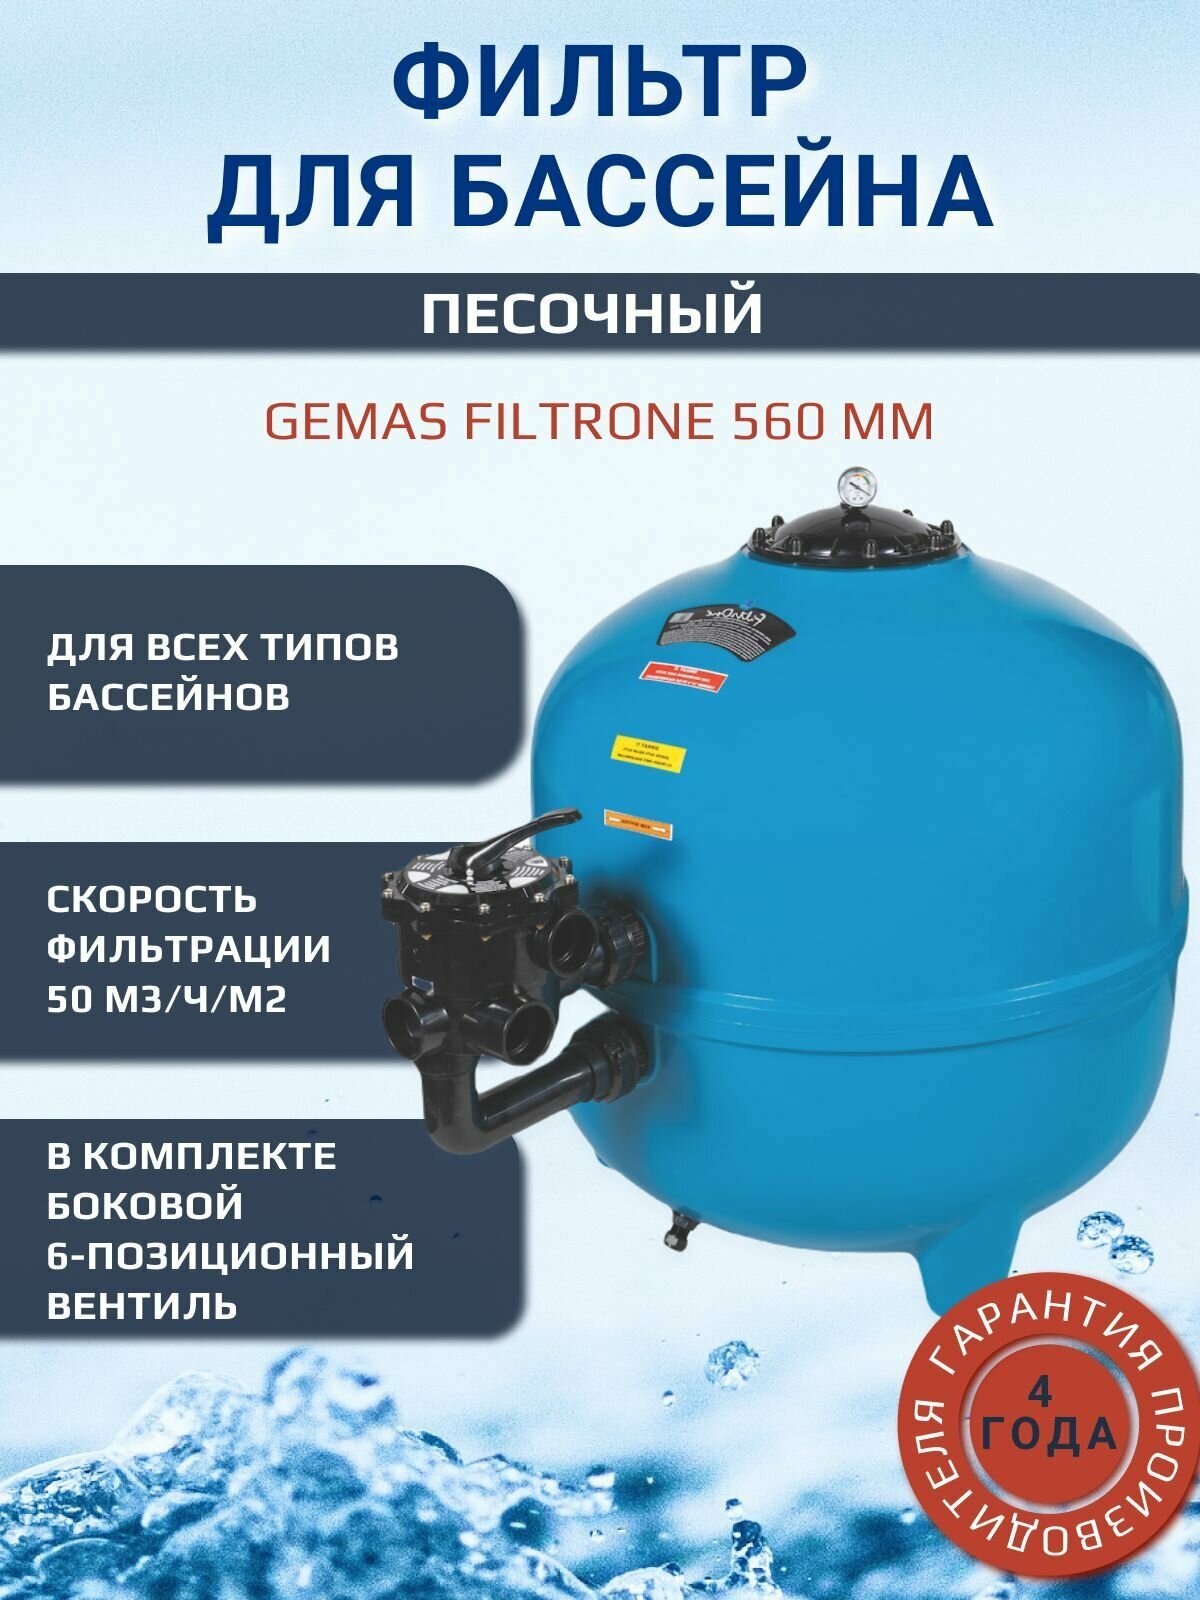 Фильтр песочный для бассейна 12.5 м3/ч. Gemas Filtrone 560 мм.